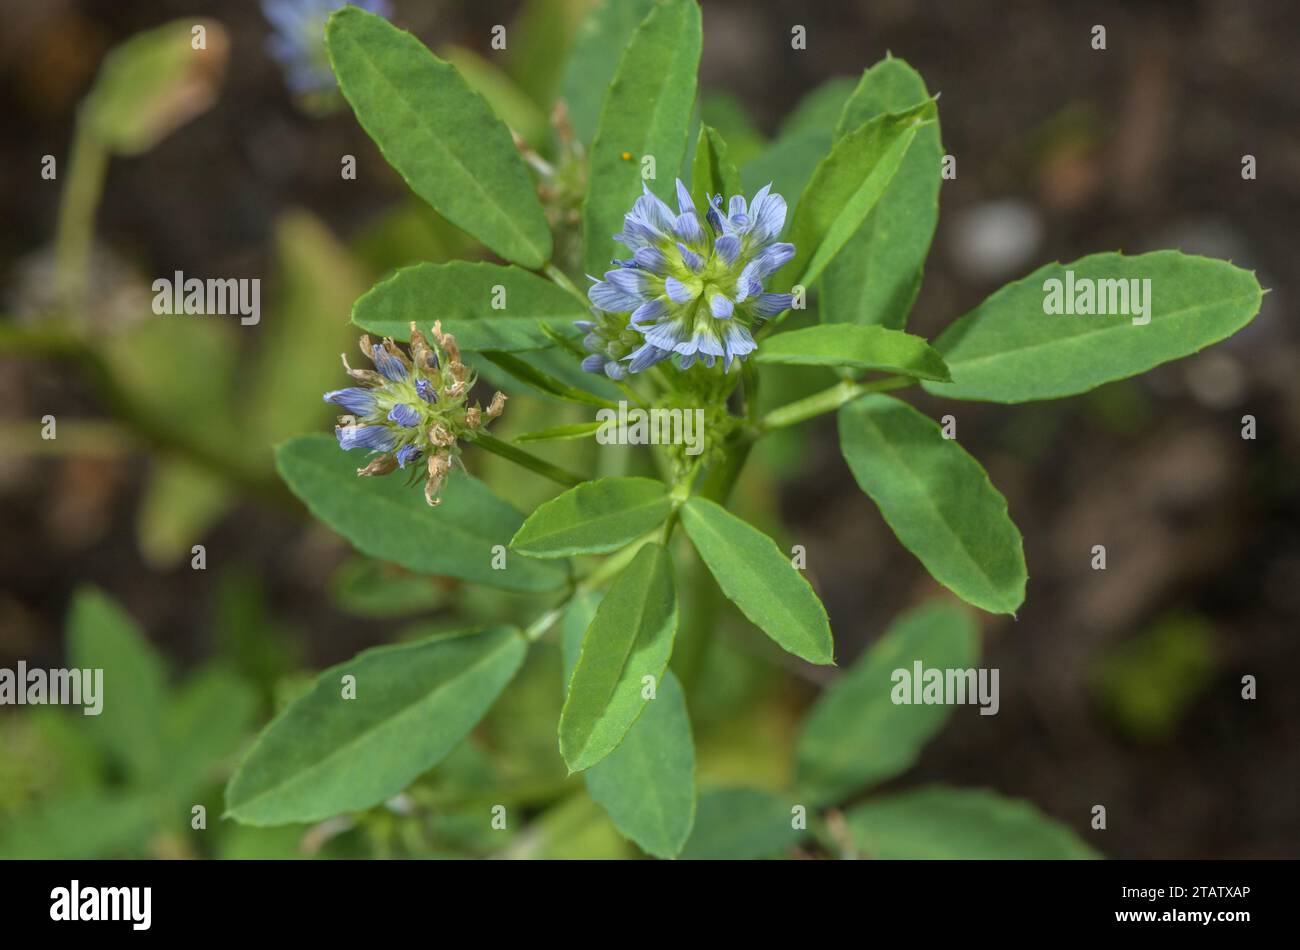 Blauer Bockshornklee, Trigonella caerulea in Blüte. Ein jährliches kulinarisches Kraut oder Gewürz. Stockfoto